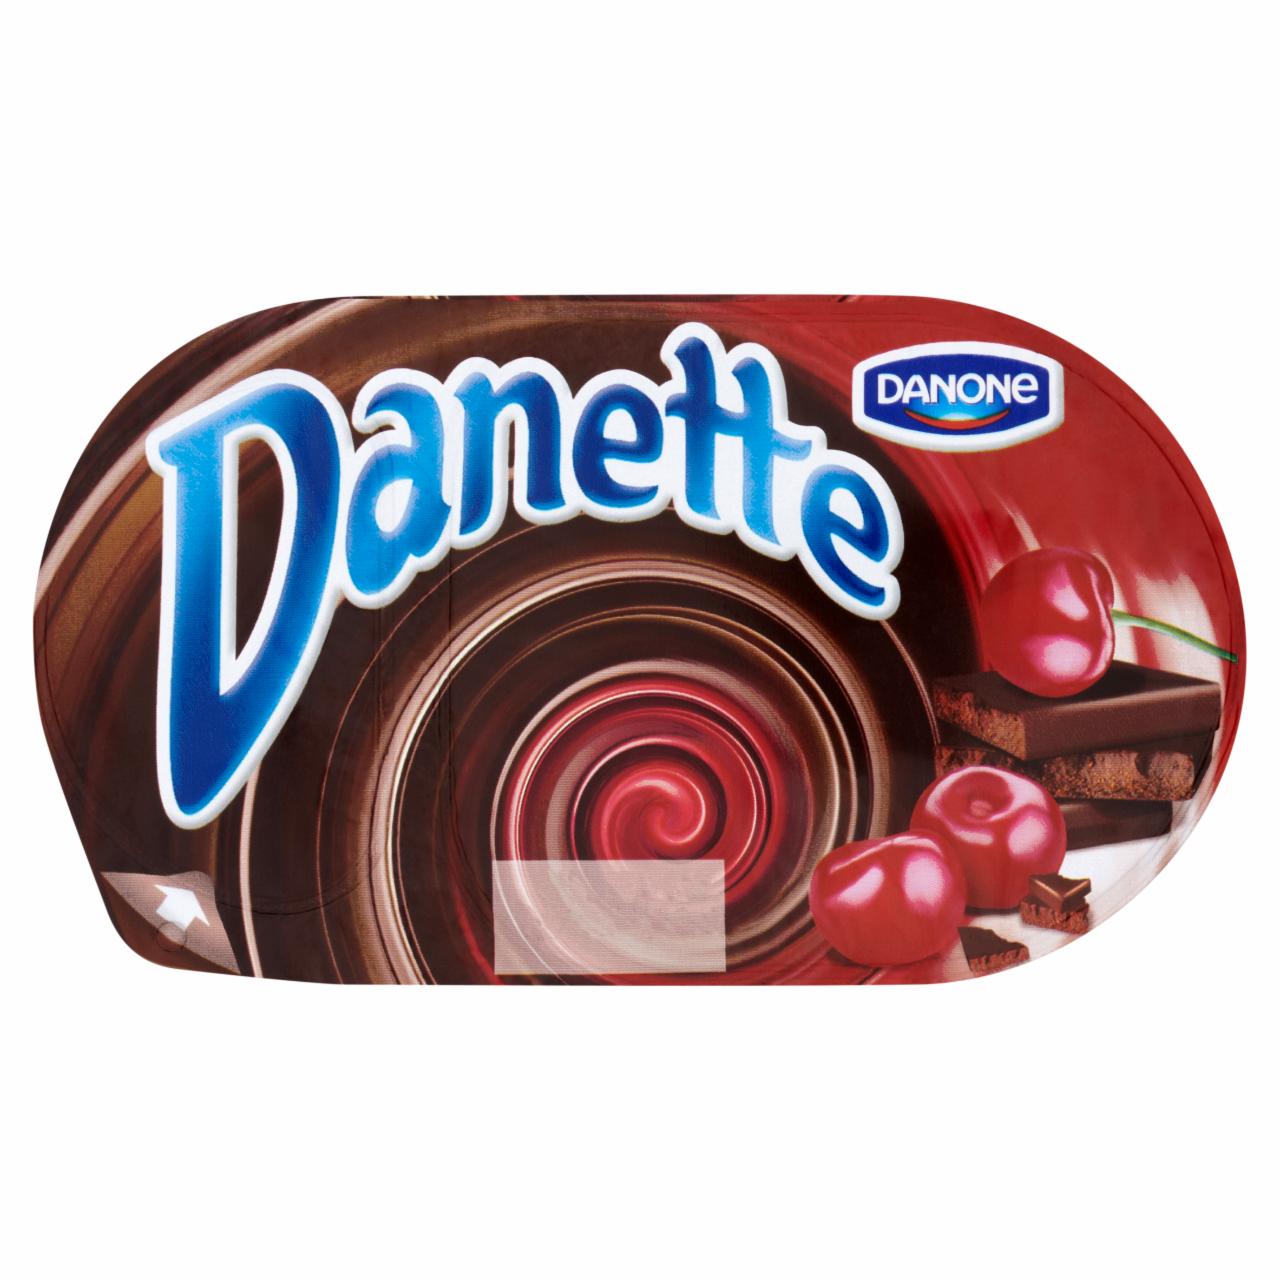 Képek - Danone Danette csokoládéízű puding meggyes öntettel 130 g